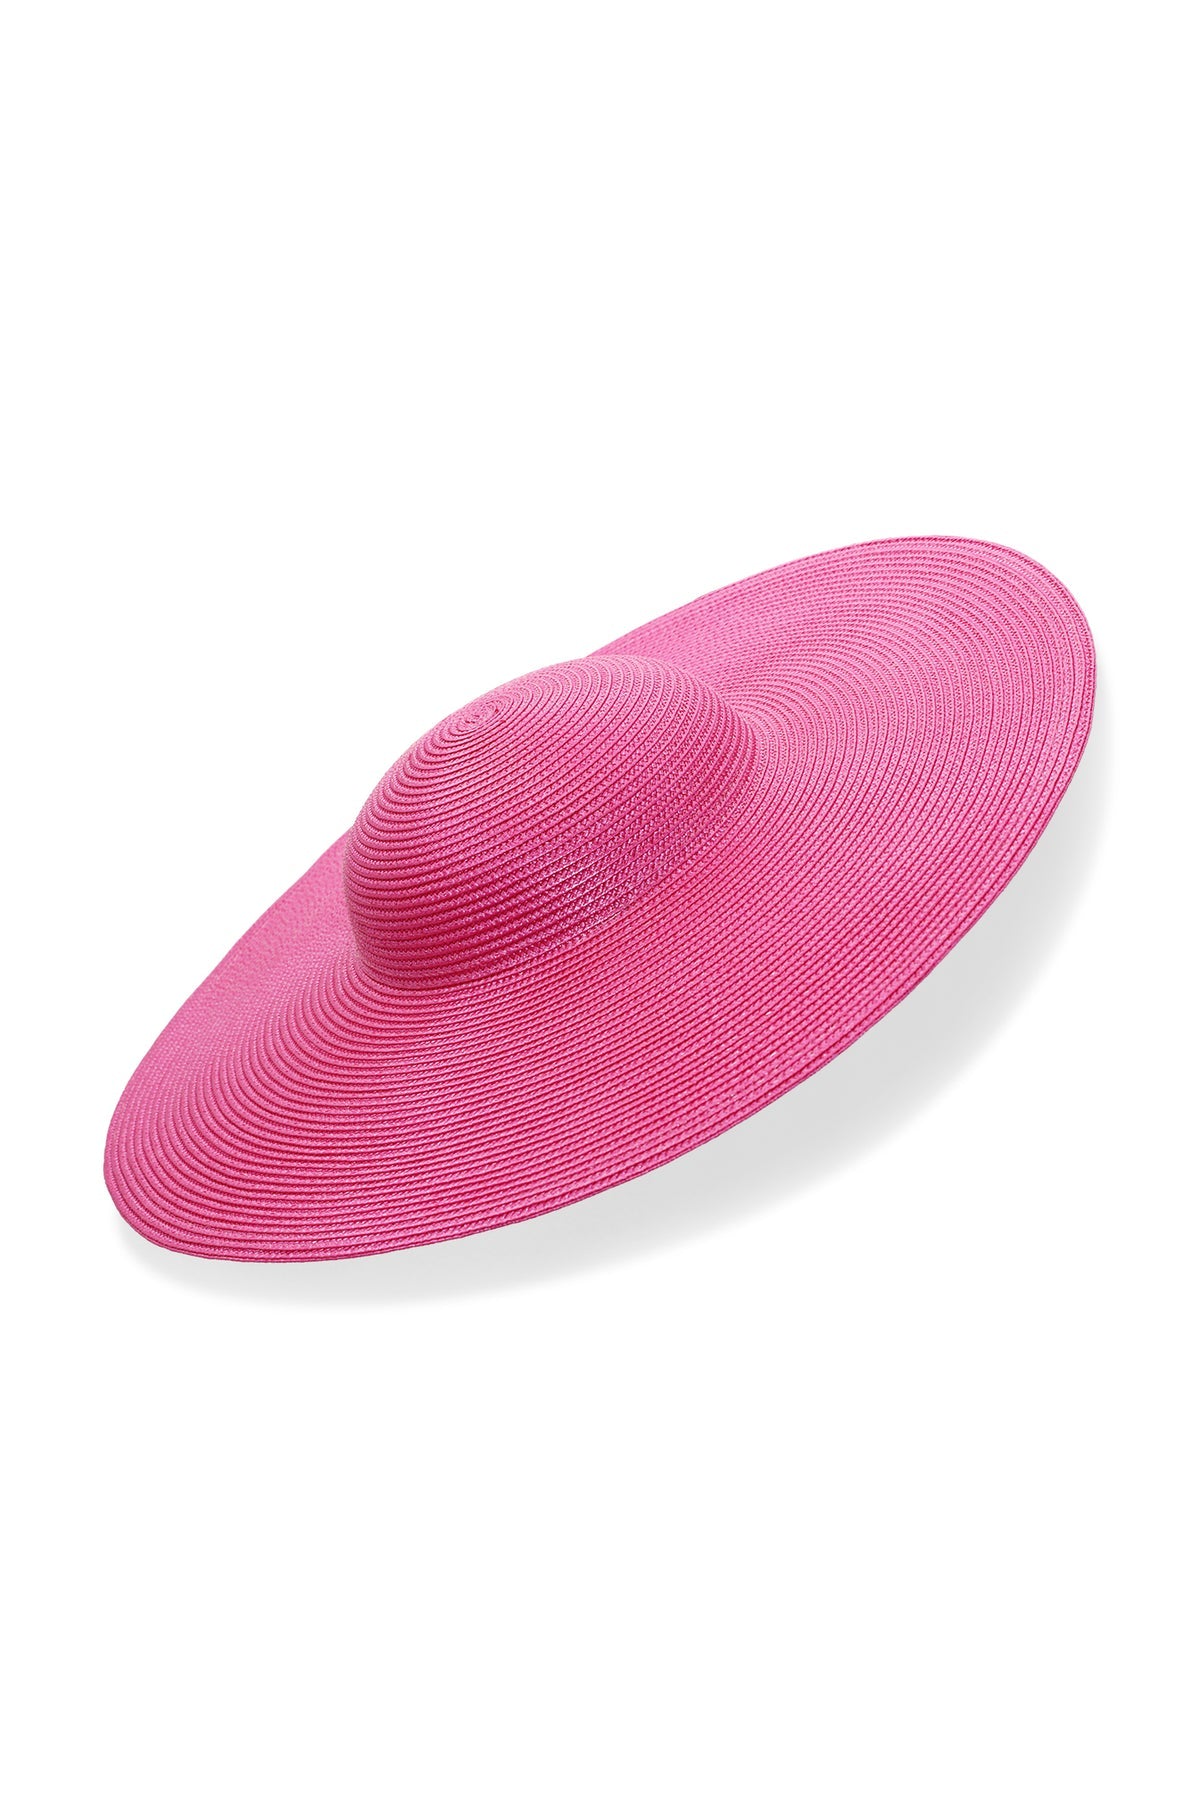 Morgan & Taylor Mona Plate Hat - Hot Pink